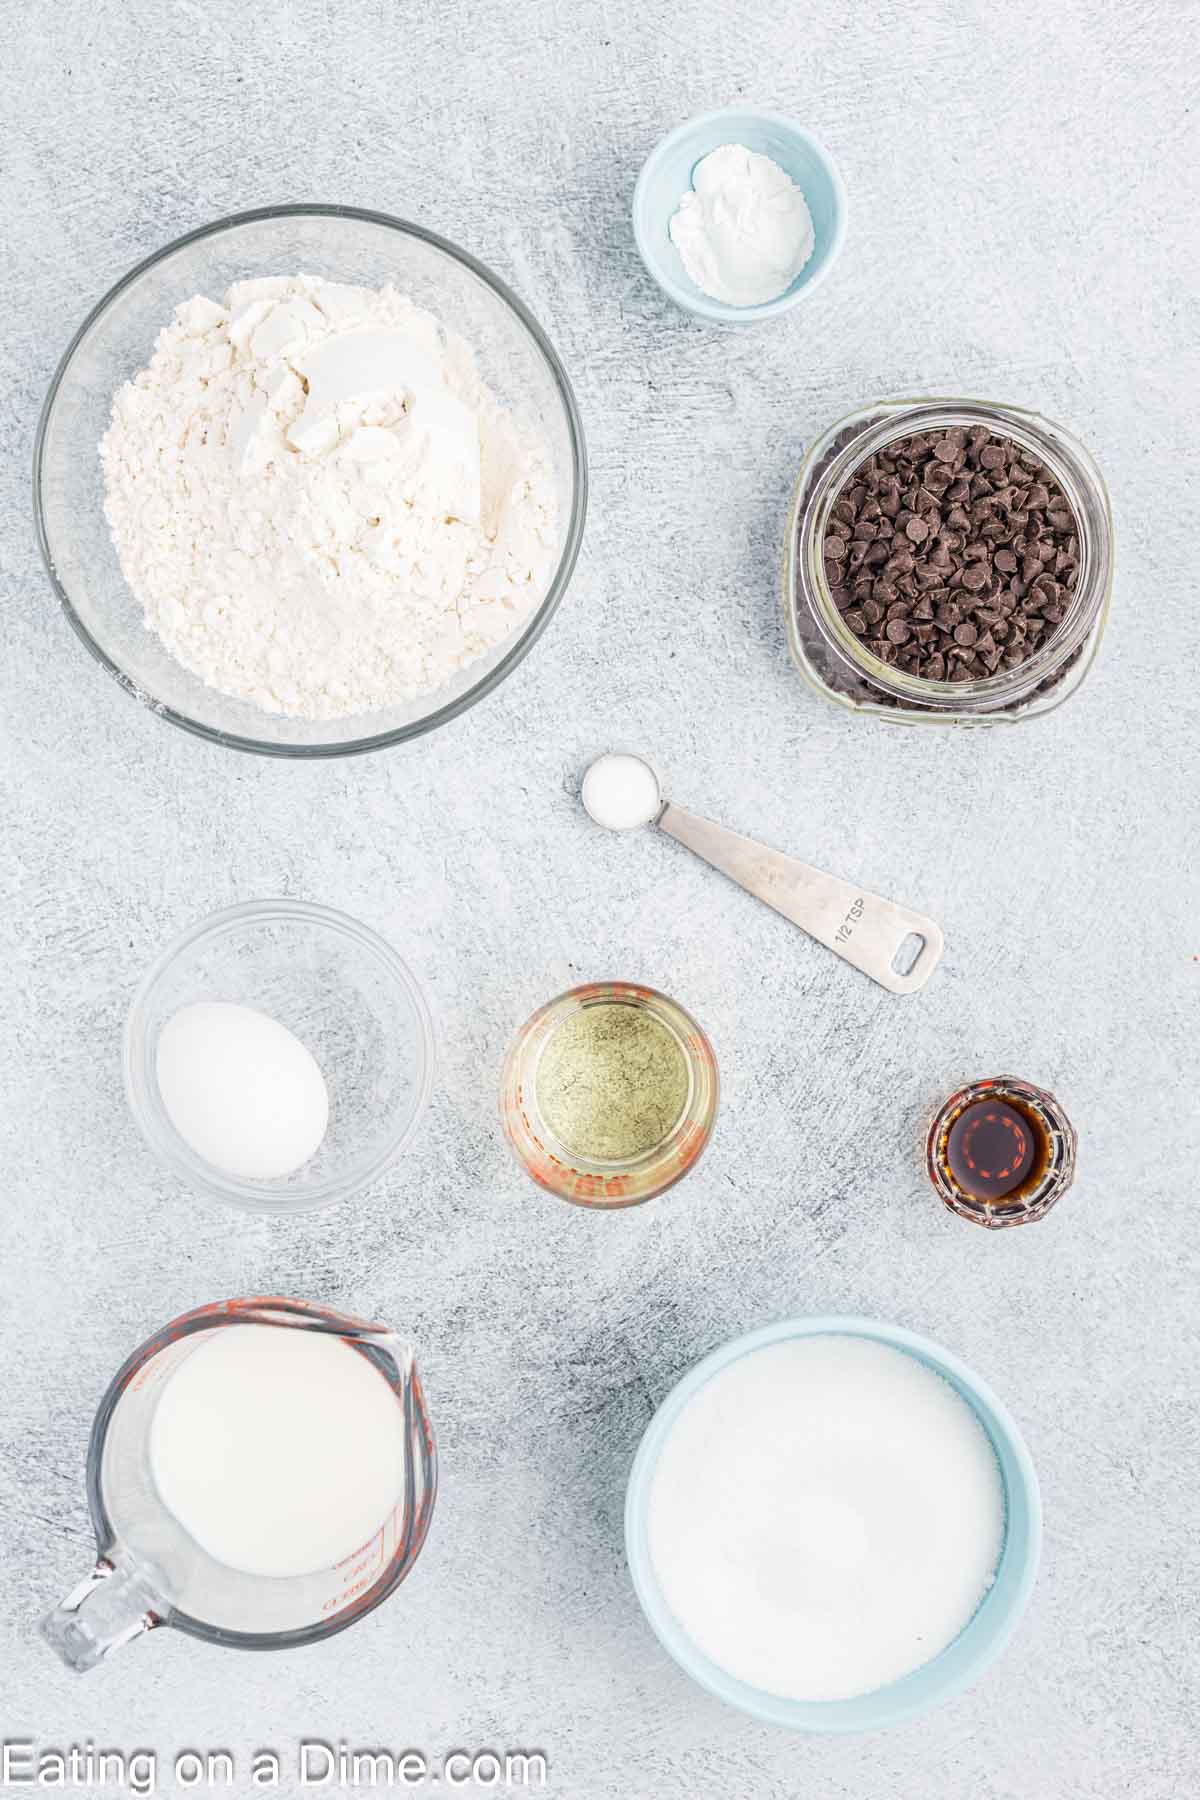 Ingredients - flour, sugar, baking powder, salt, oil, egg, vanilla, milk, chocolate chips